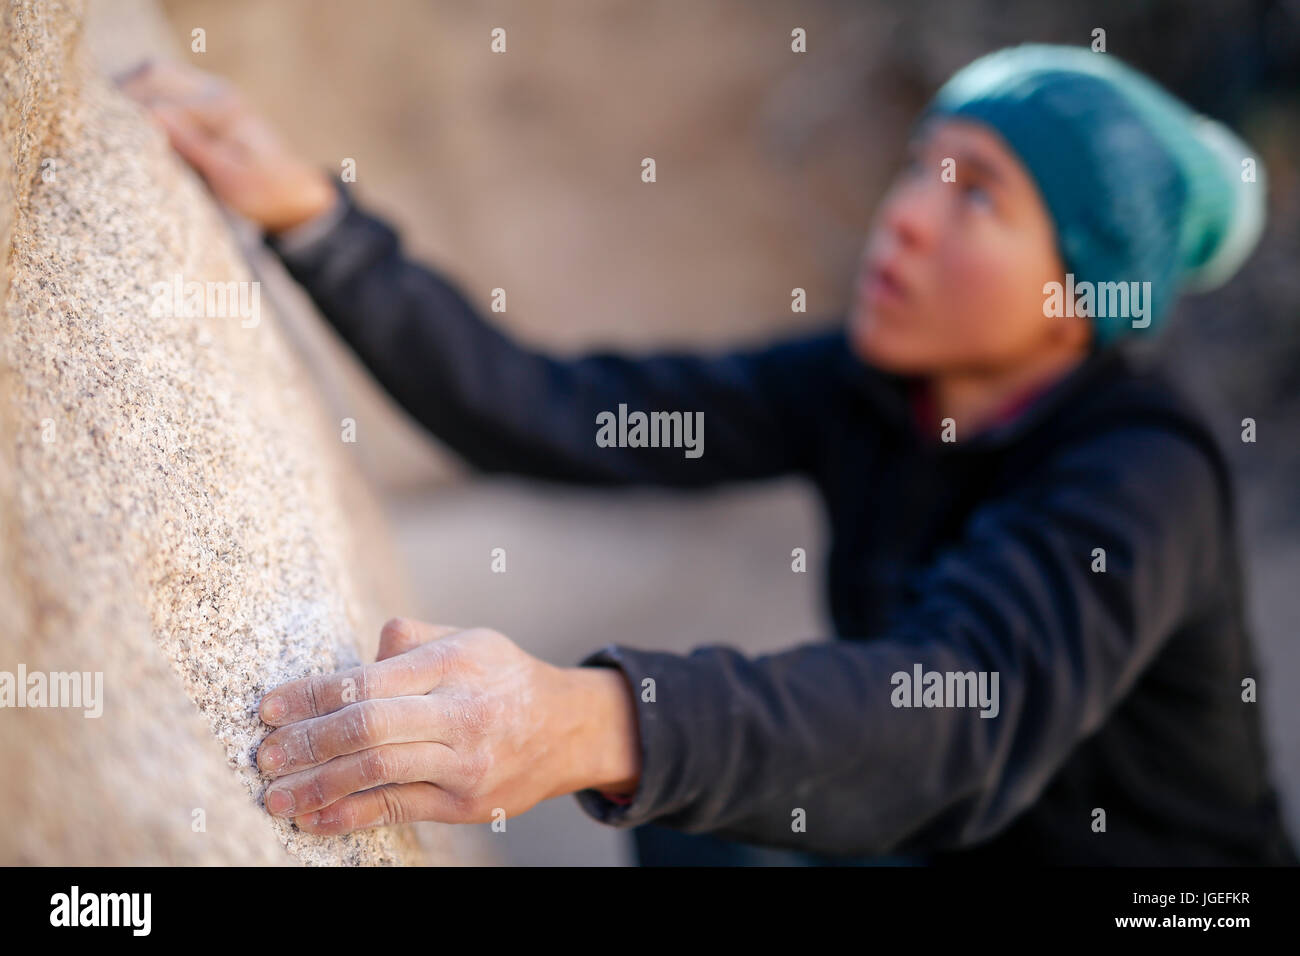 Giovani razza mista donna vestita di freddo di abbigliamento rock si arrampica nel deserto Foto Stock